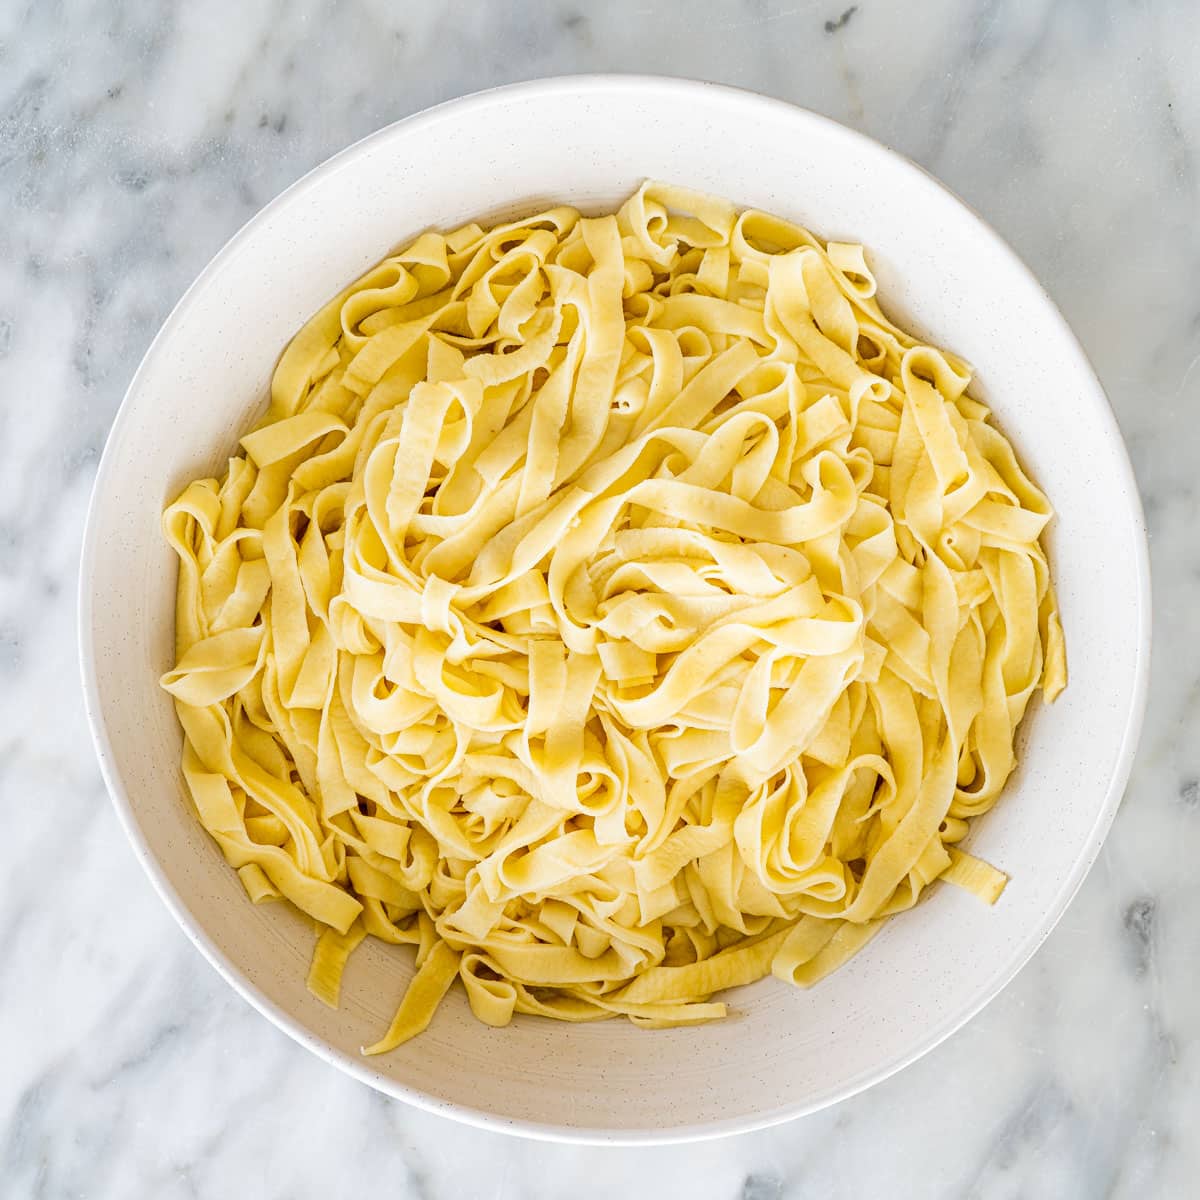 https://www.jocooks.com/wp-content/uploads/2020/04/homemade-pasta-1-18.jpg